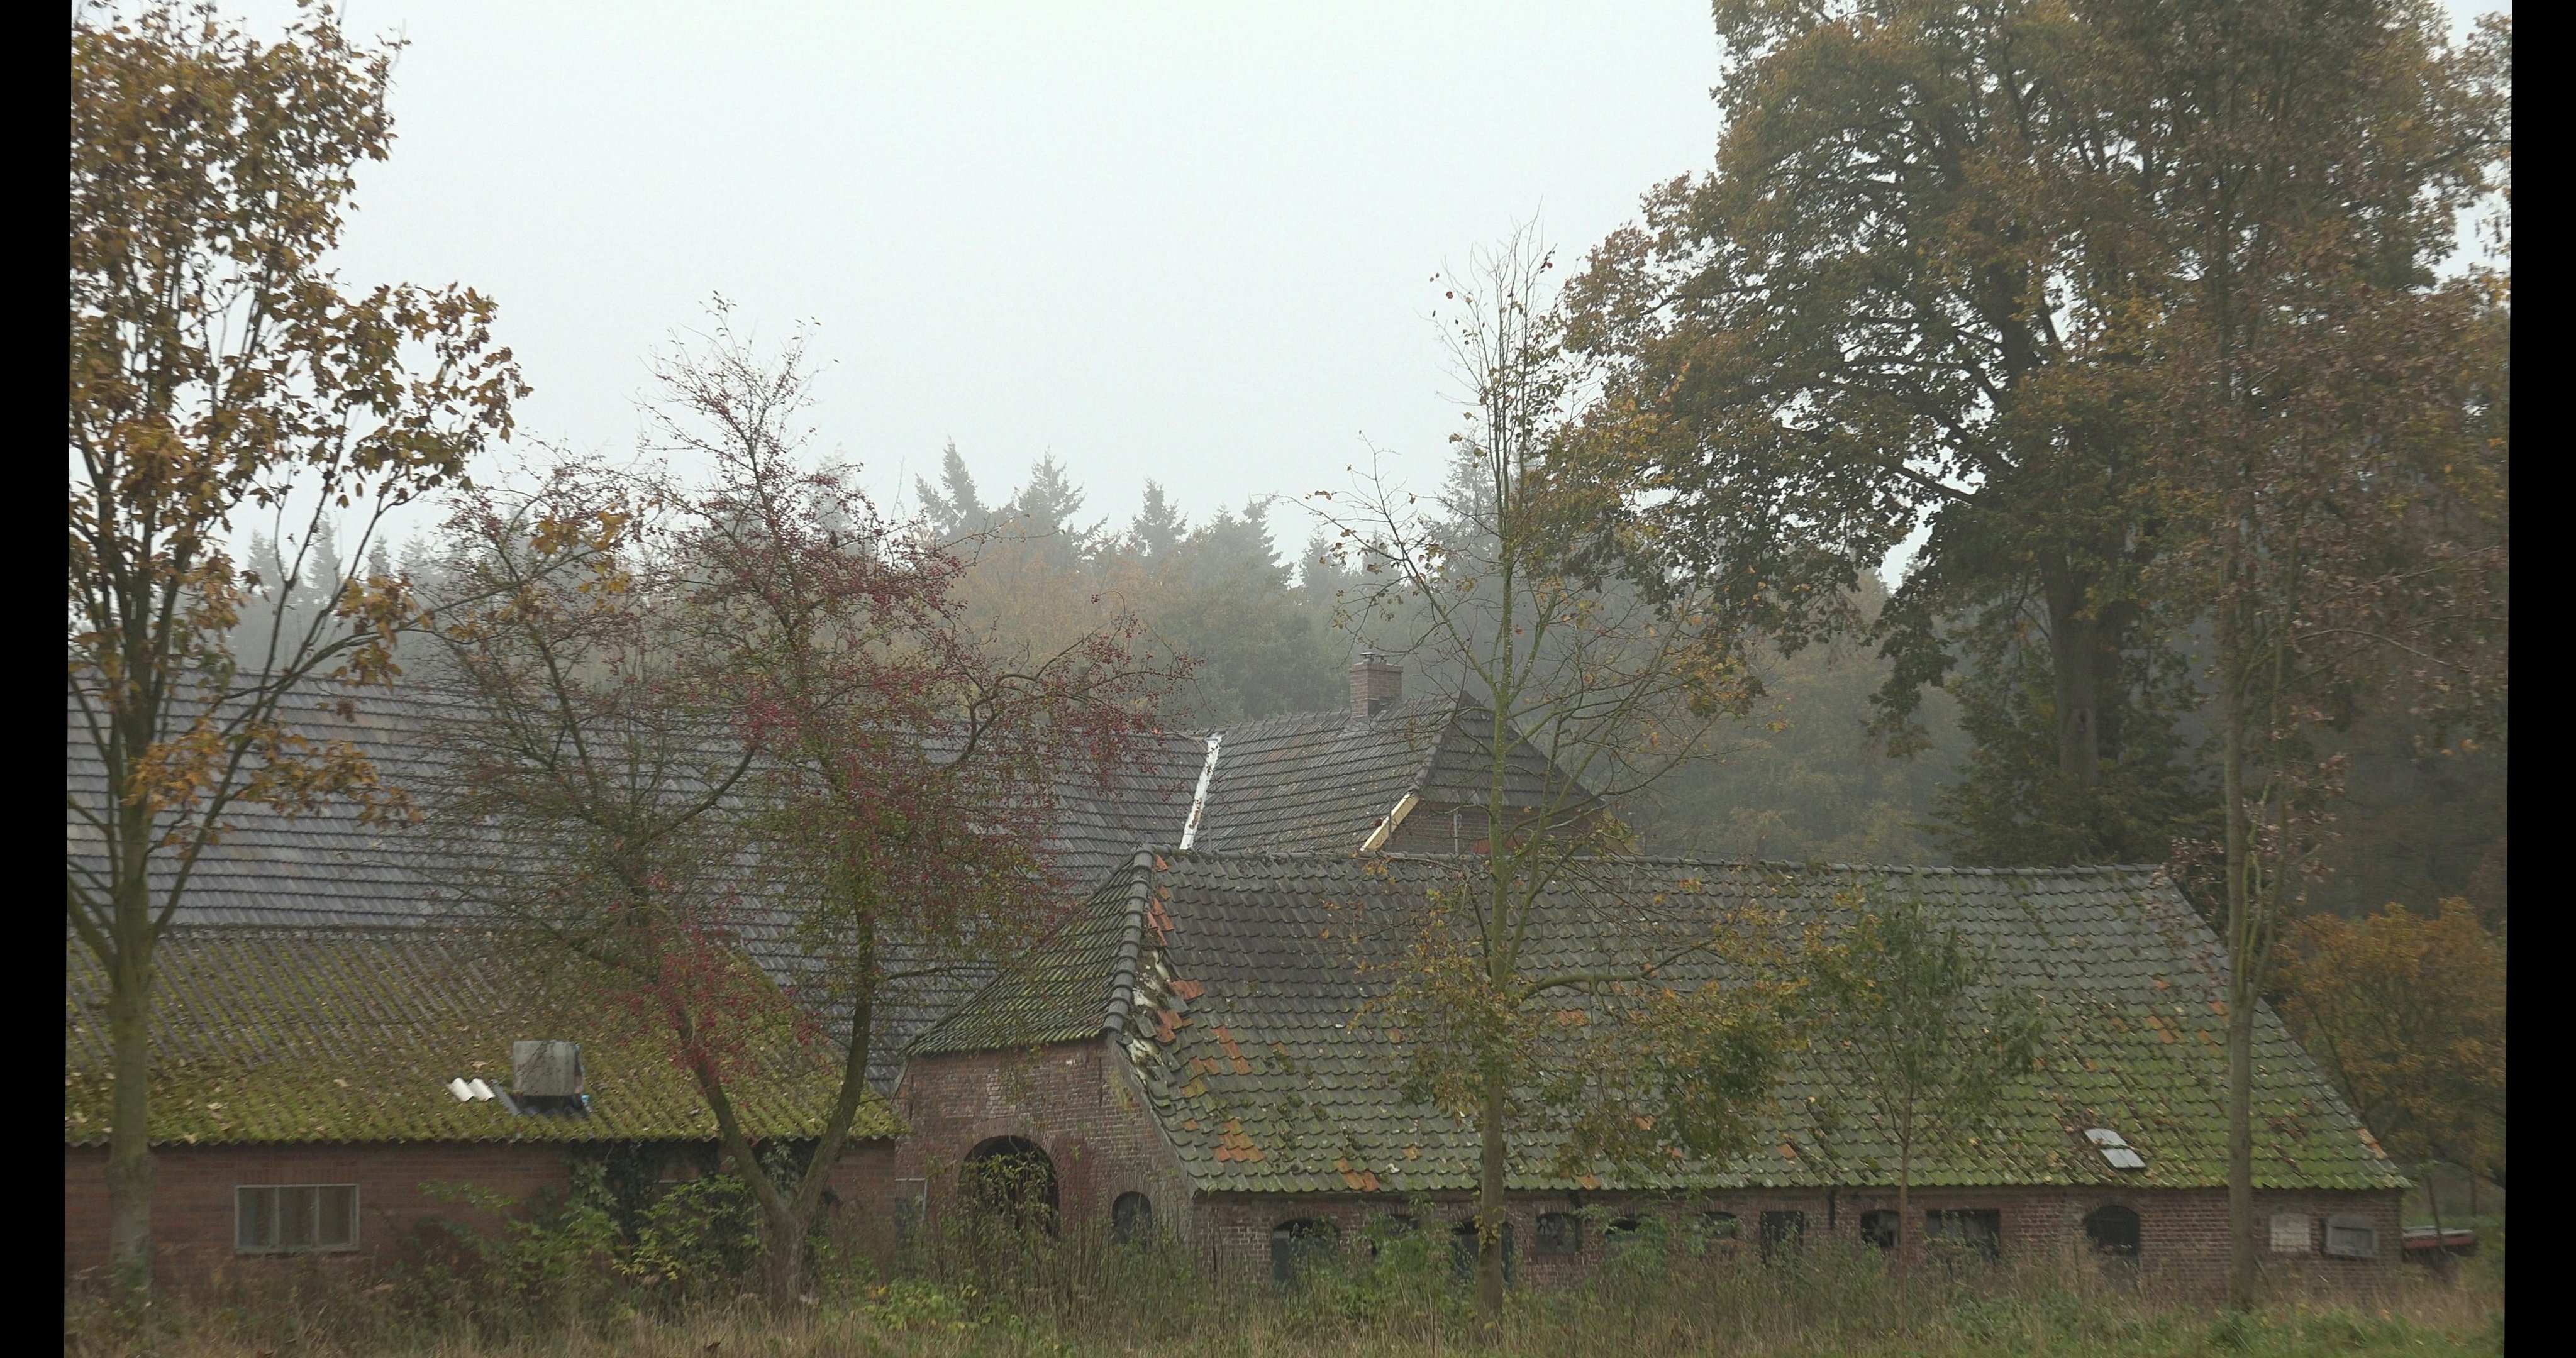 De daken van schuren en huis in het landschap.